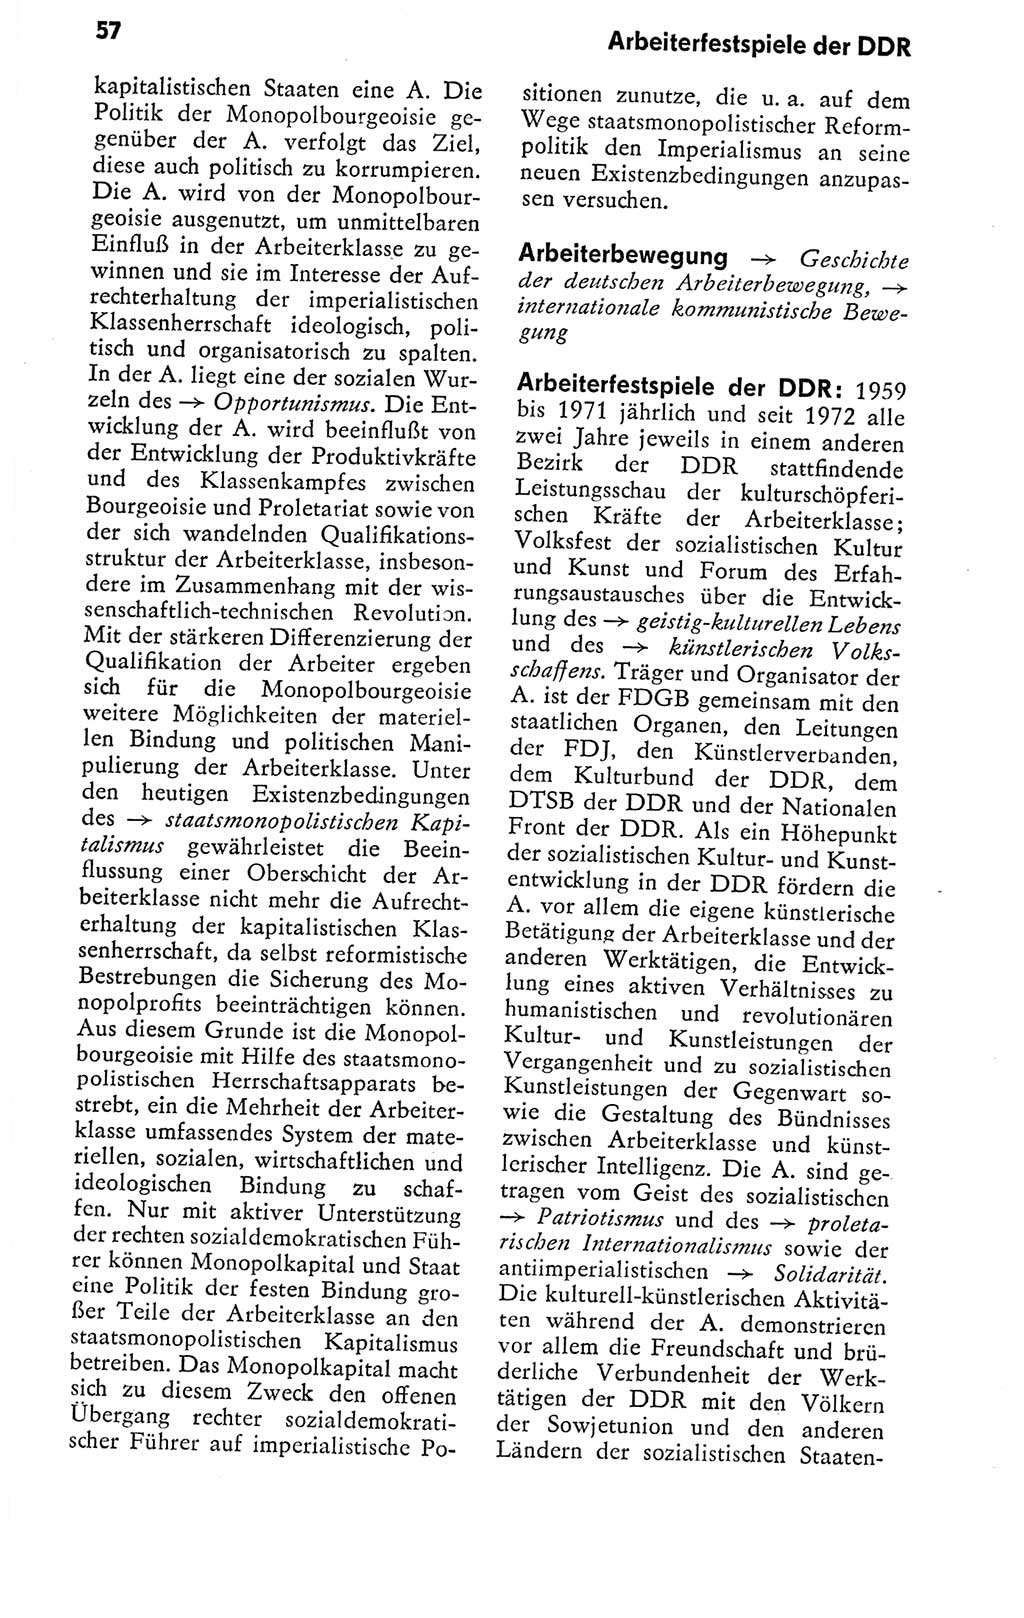 Kleines politisches Wörterbuch [Deutsche Demokratische Republik (DDR)] 1978, Seite 57 (Kl. pol. Wb. DDR 1978, S. 57)